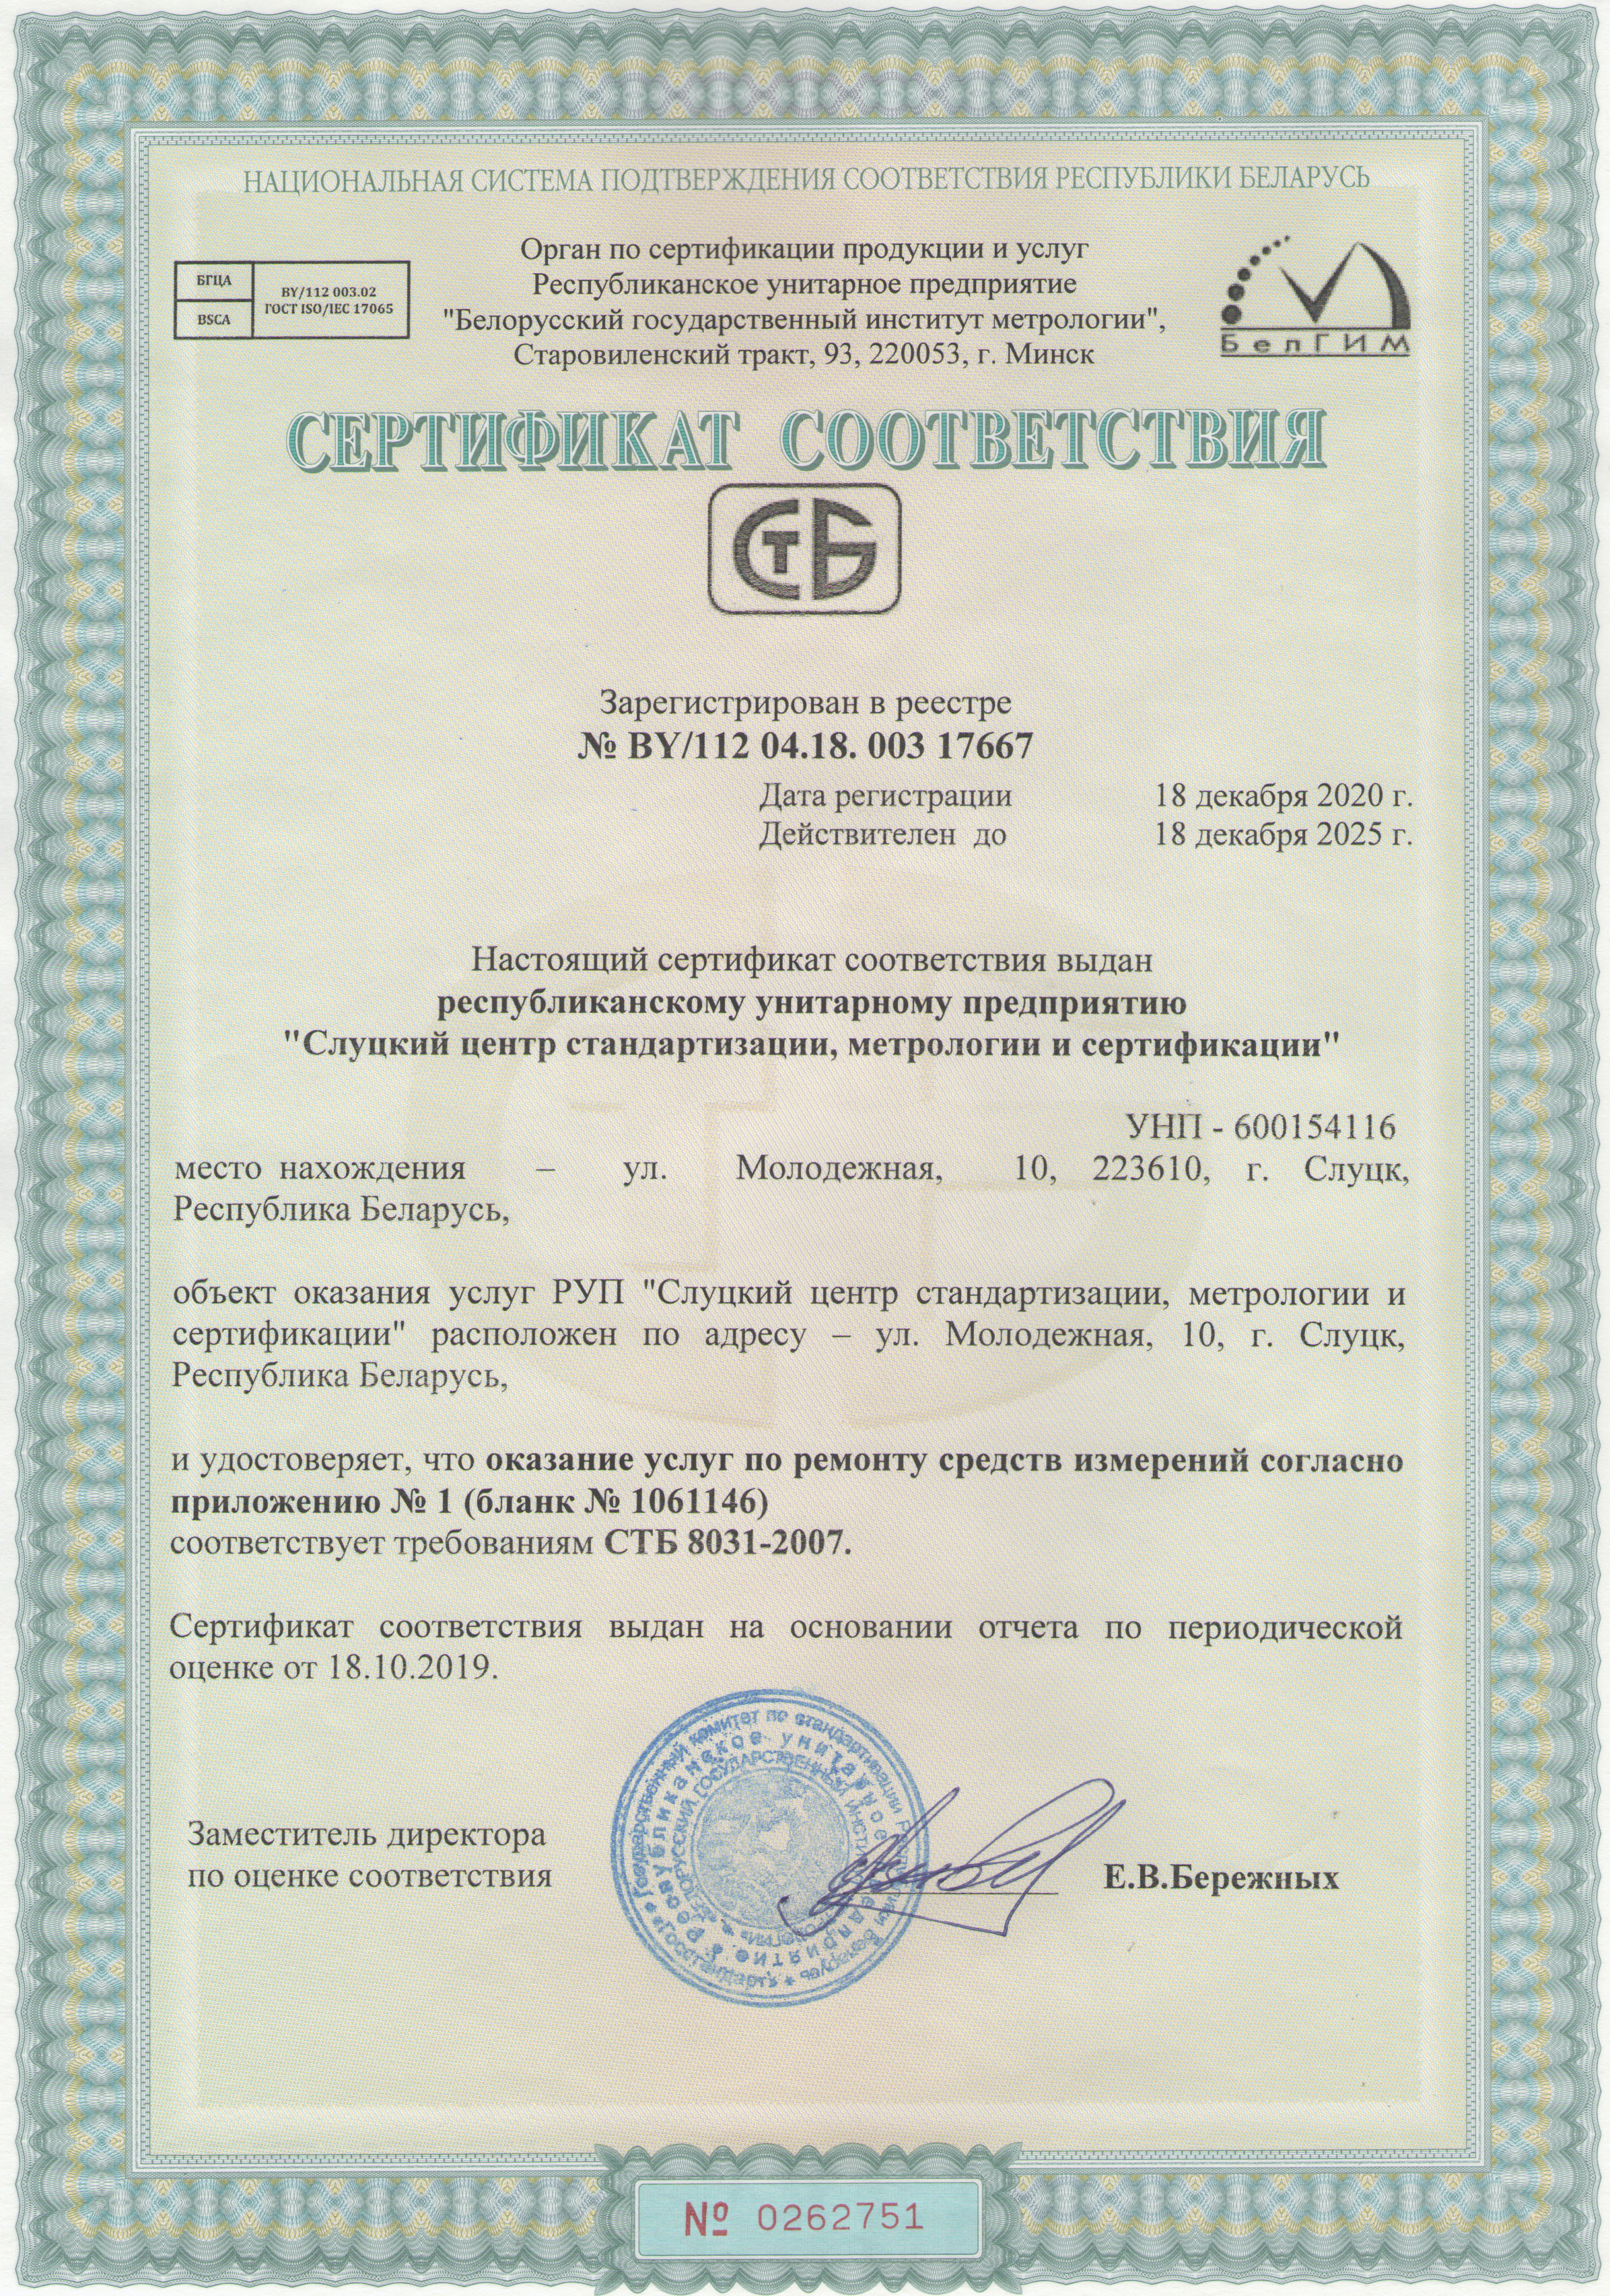 Сертификат соответствия отдела поверки и калибровки средств измерений на право ремонта средств измерений